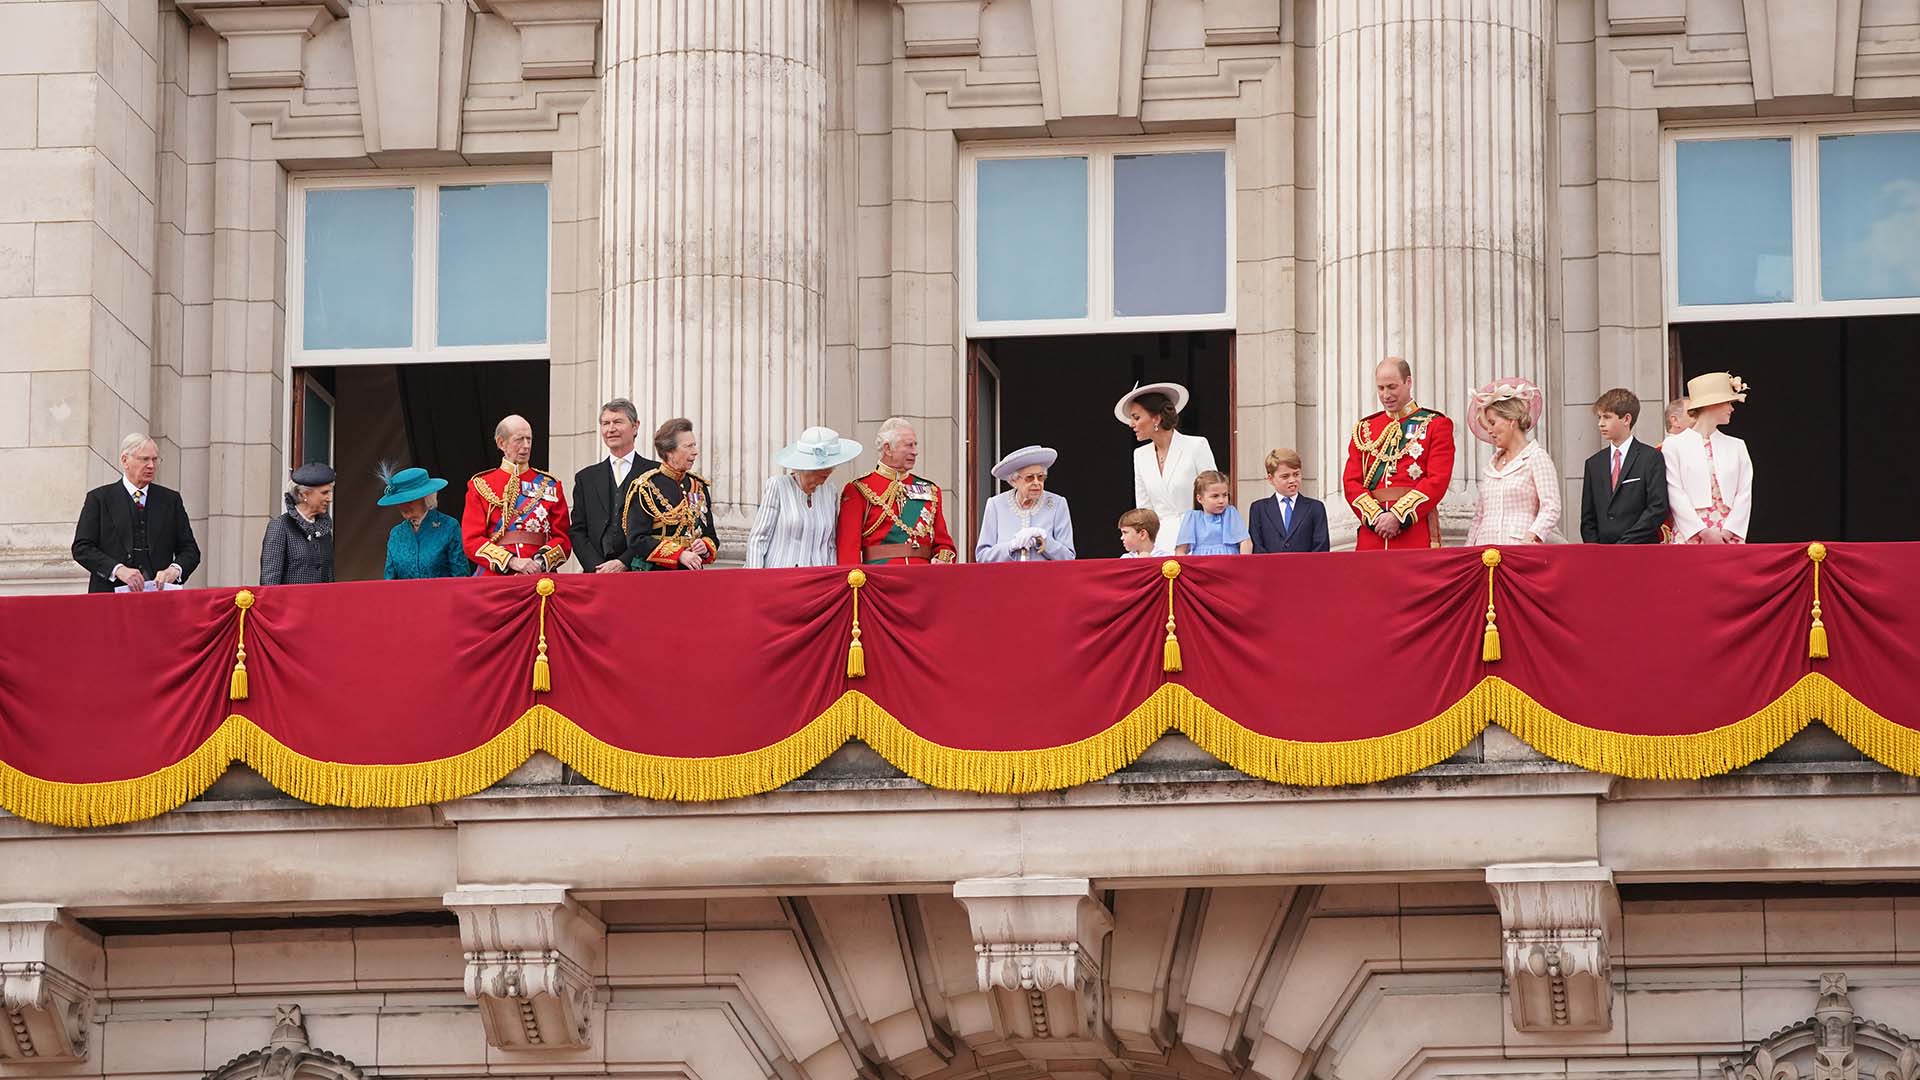 Rainha Elizabeth II com a família real